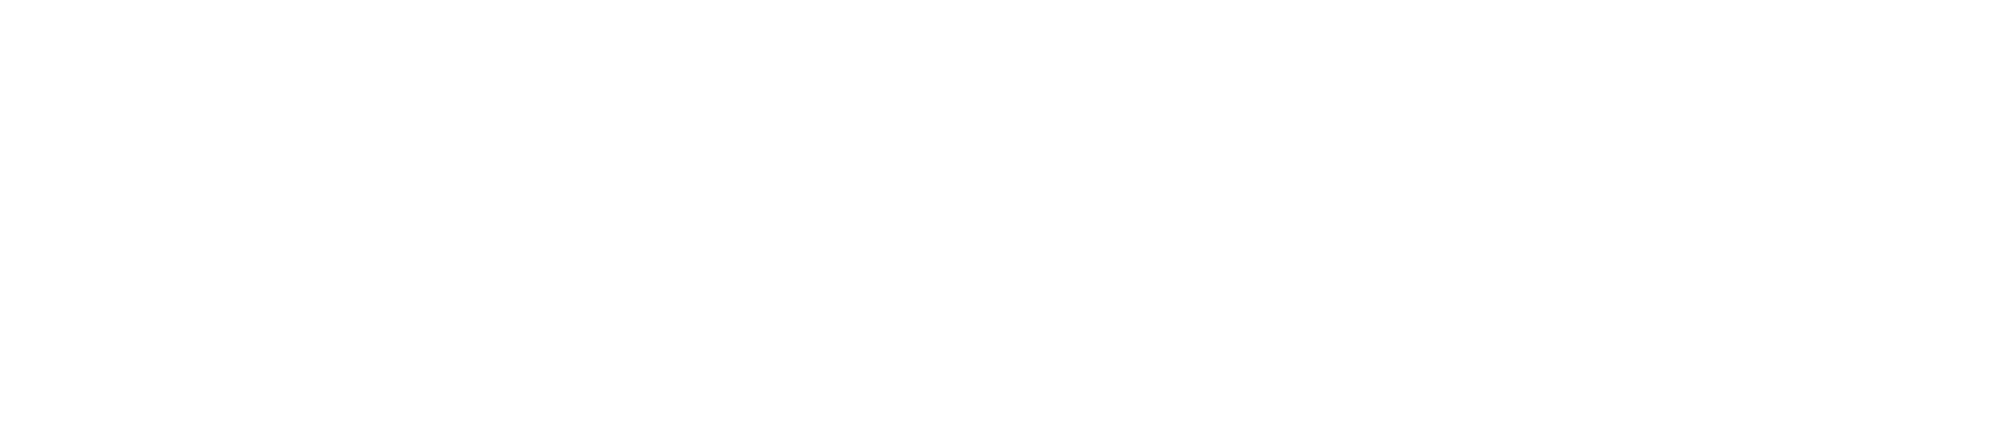 Fathom Realty Logo1